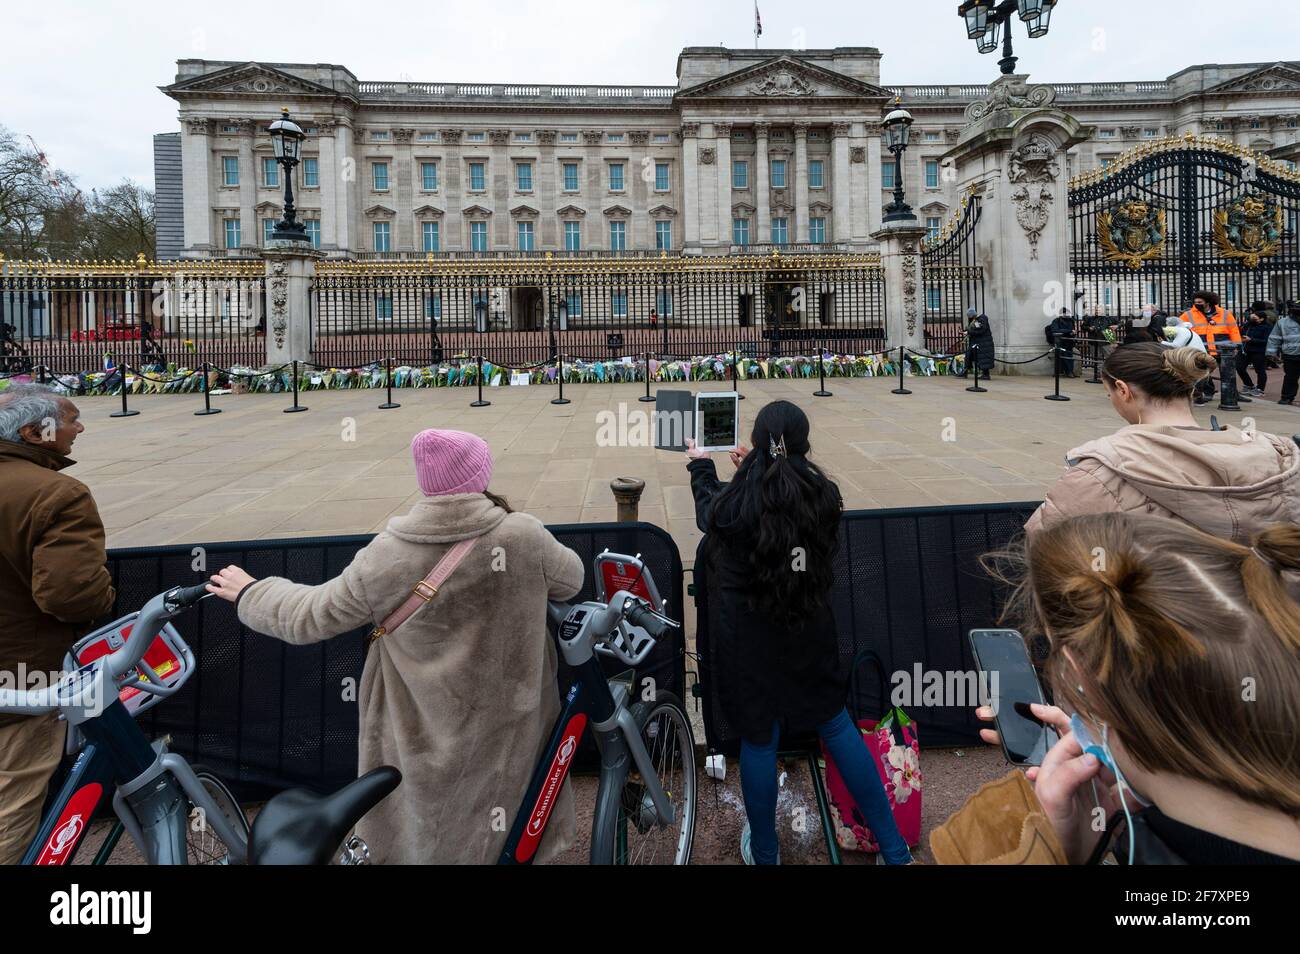 Londres, Reino Unido. 10 de abril de 2021. El día anterior se anunciaron multitudes en las afueras del Palacio de Buckingham después de la muerte del príncipe Felipe, de 99 años de edad. Crédito: Stephen Chung / Alamy Live News Foto de stock